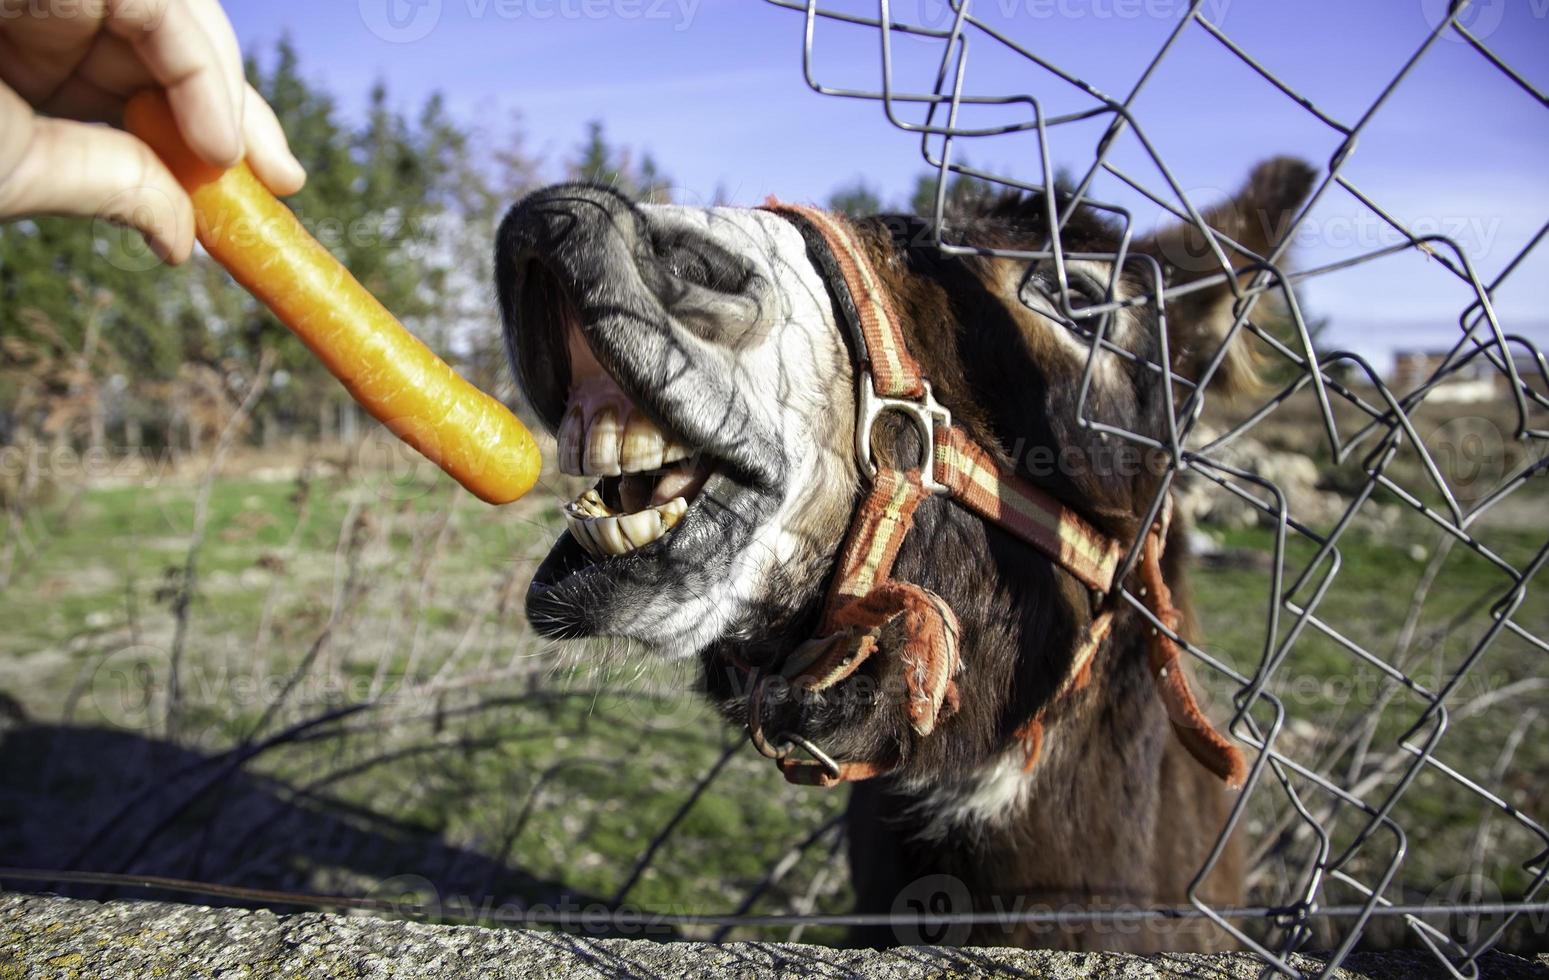 burro comiendo zanahoria foto